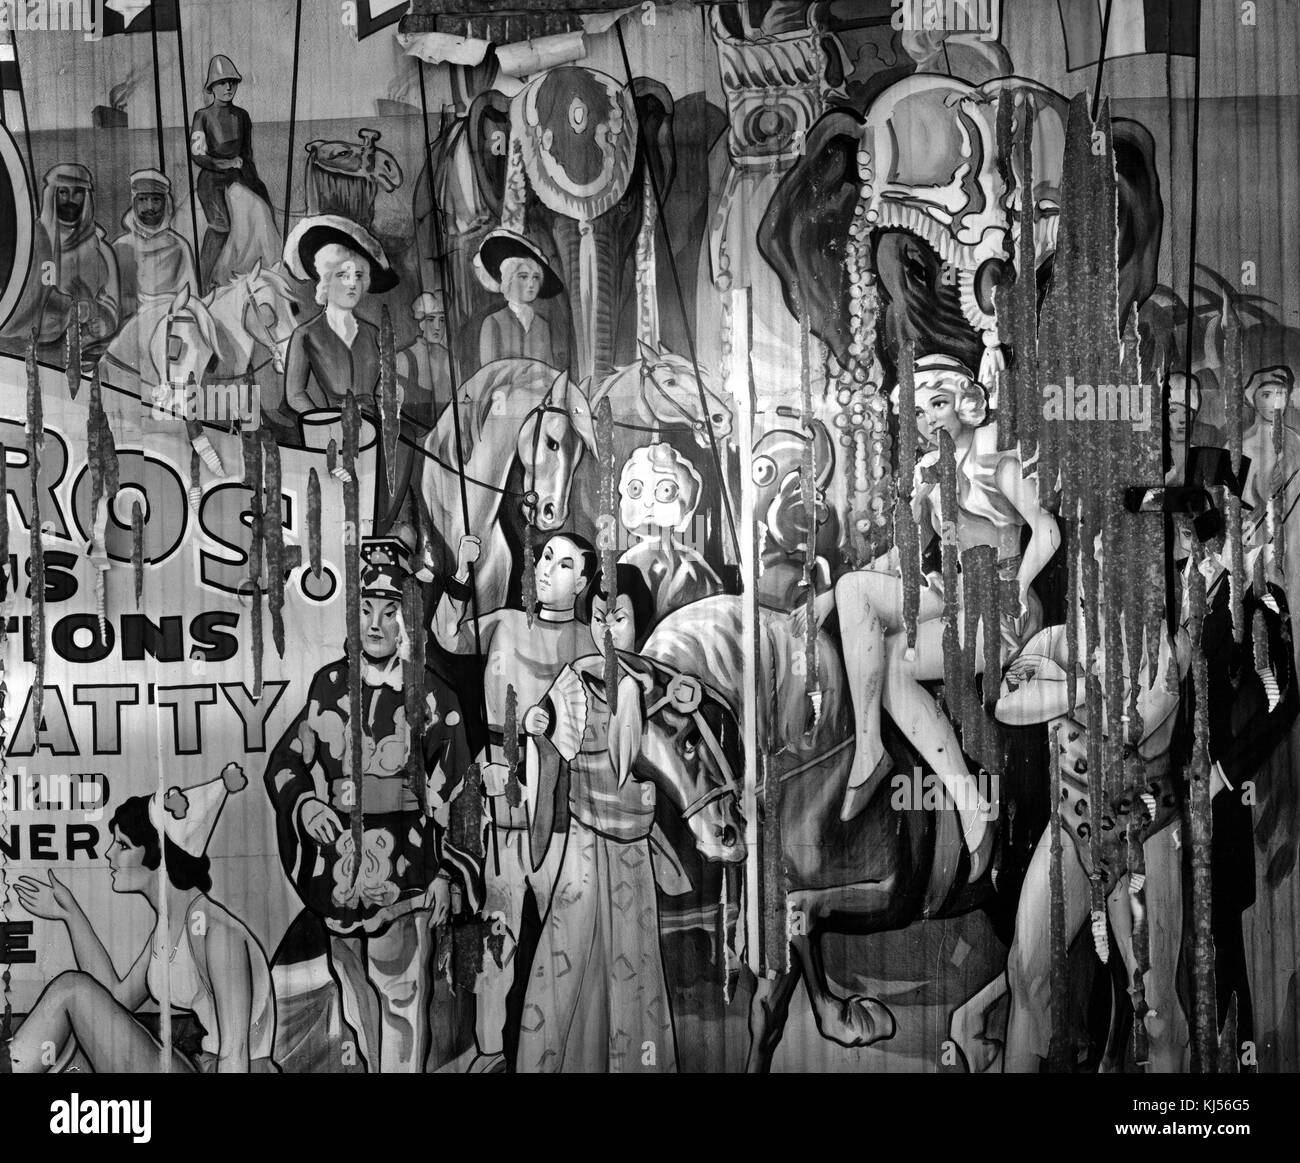 Eine Fotografie eines illustrierten Posters für den Zirkus, das Poster wurde an eine Wand geklebt und ist abblätternd zu sehen, die Illustration zeigt Darsteller in vielen verschiedenen Kostümen, bestehend aus verschiedenen historischen Themen aus der ganzen Welt, Pferde und Elefanten sind ebenfalls zu sehen, Alabama, 1935. Aus der New York Public Library. Stockfoto